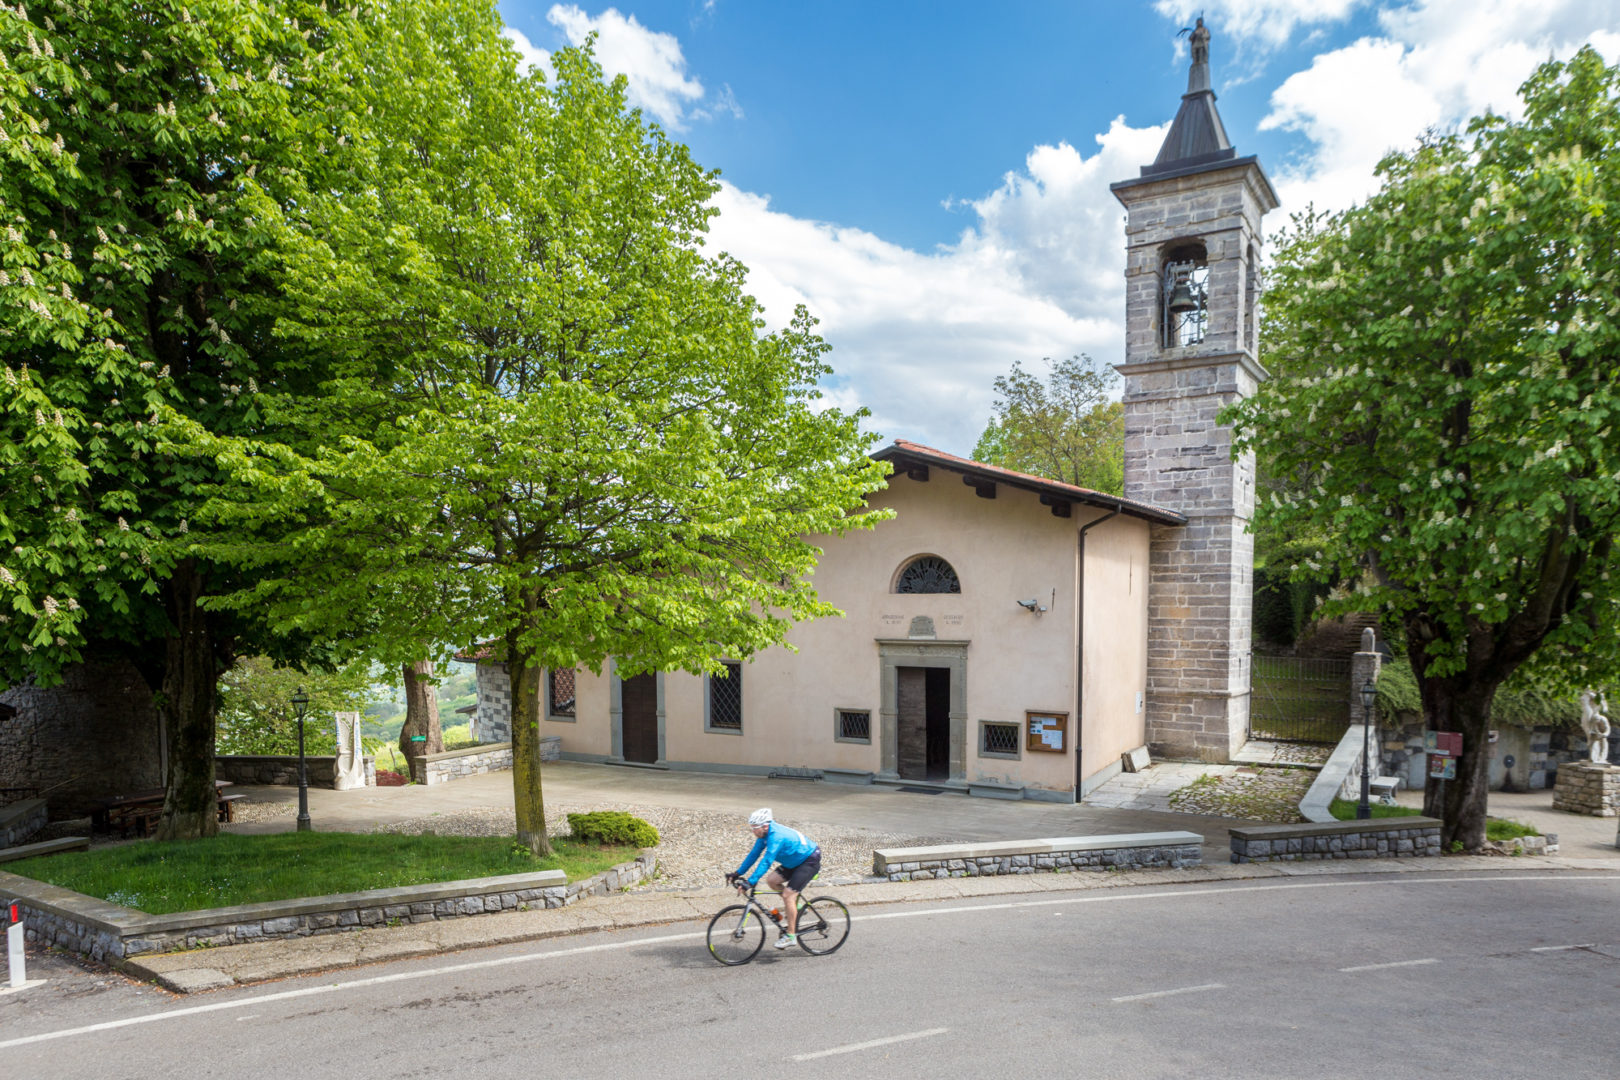 Sito-ufficiale-Turismo-in-Val-Cavallina-Lago-di-Endine-Santuario-del-Colle-Gallodedicato-alla-Madonna-della-neve-roccoli-e-palazzo-spini-1300-1800-1-1620x1080